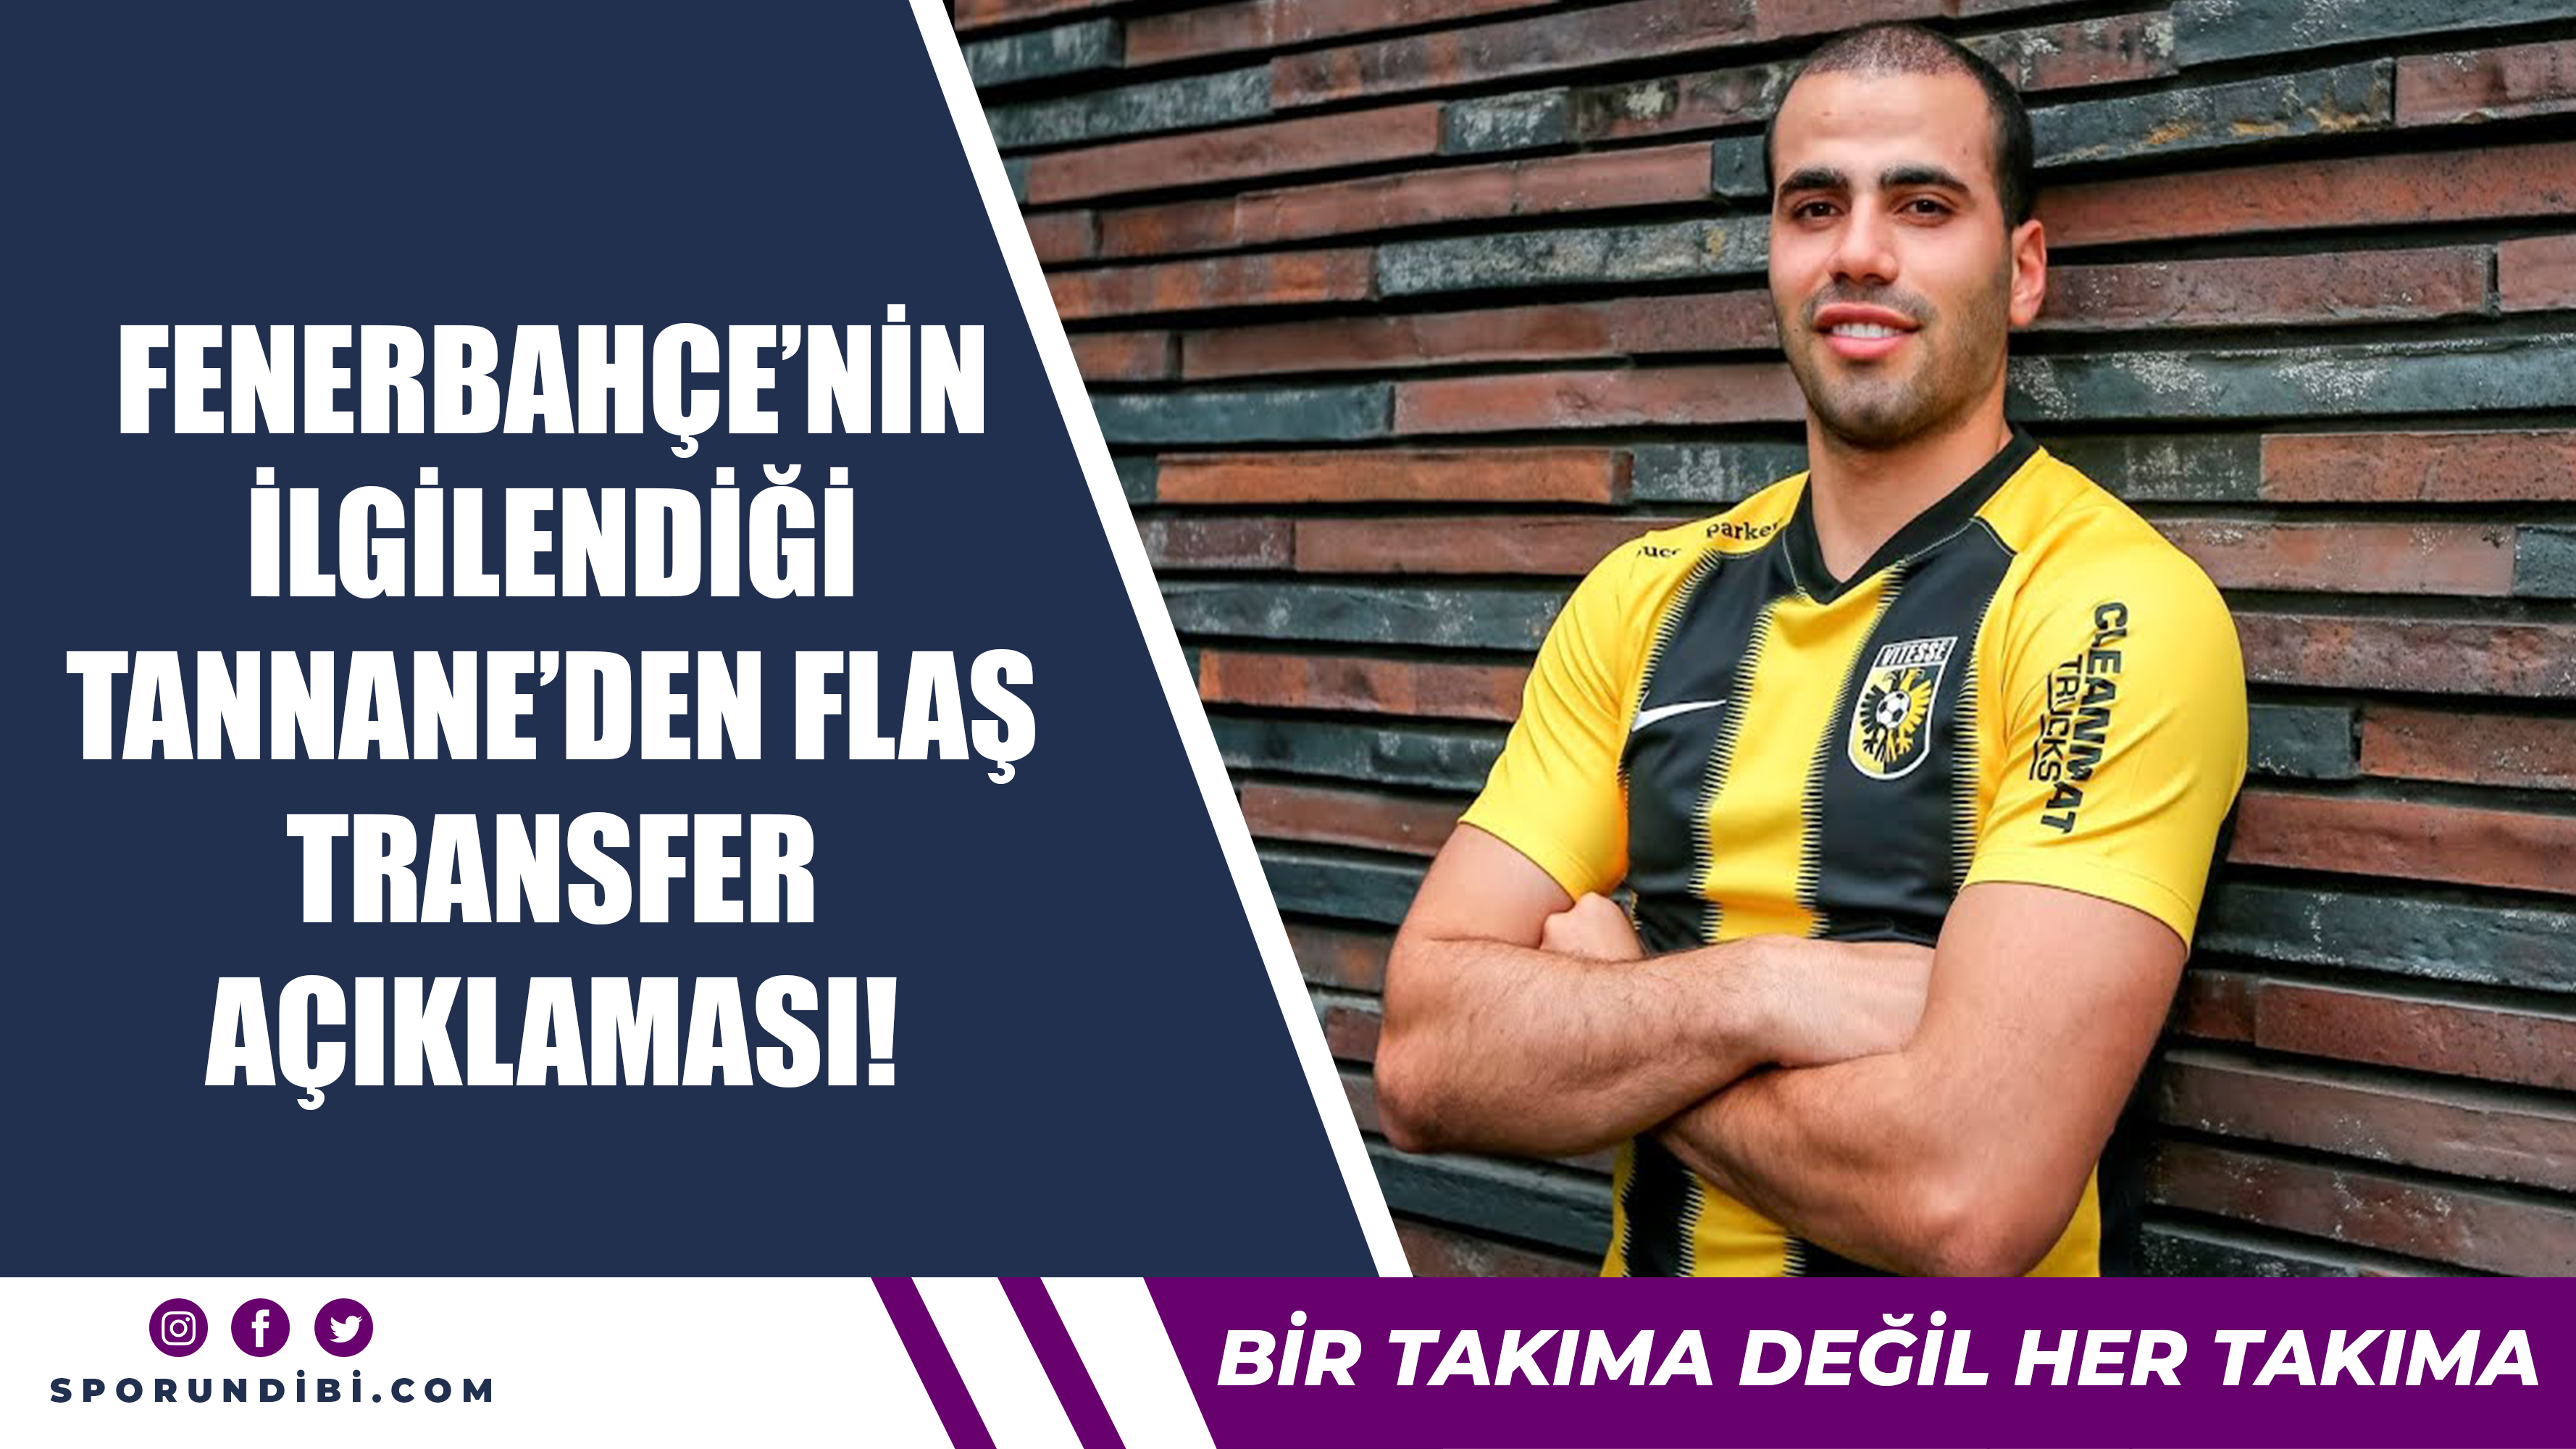 Fenerbahçe'nin ilgilendiği Tannane'den flaş transfer açıklaması!